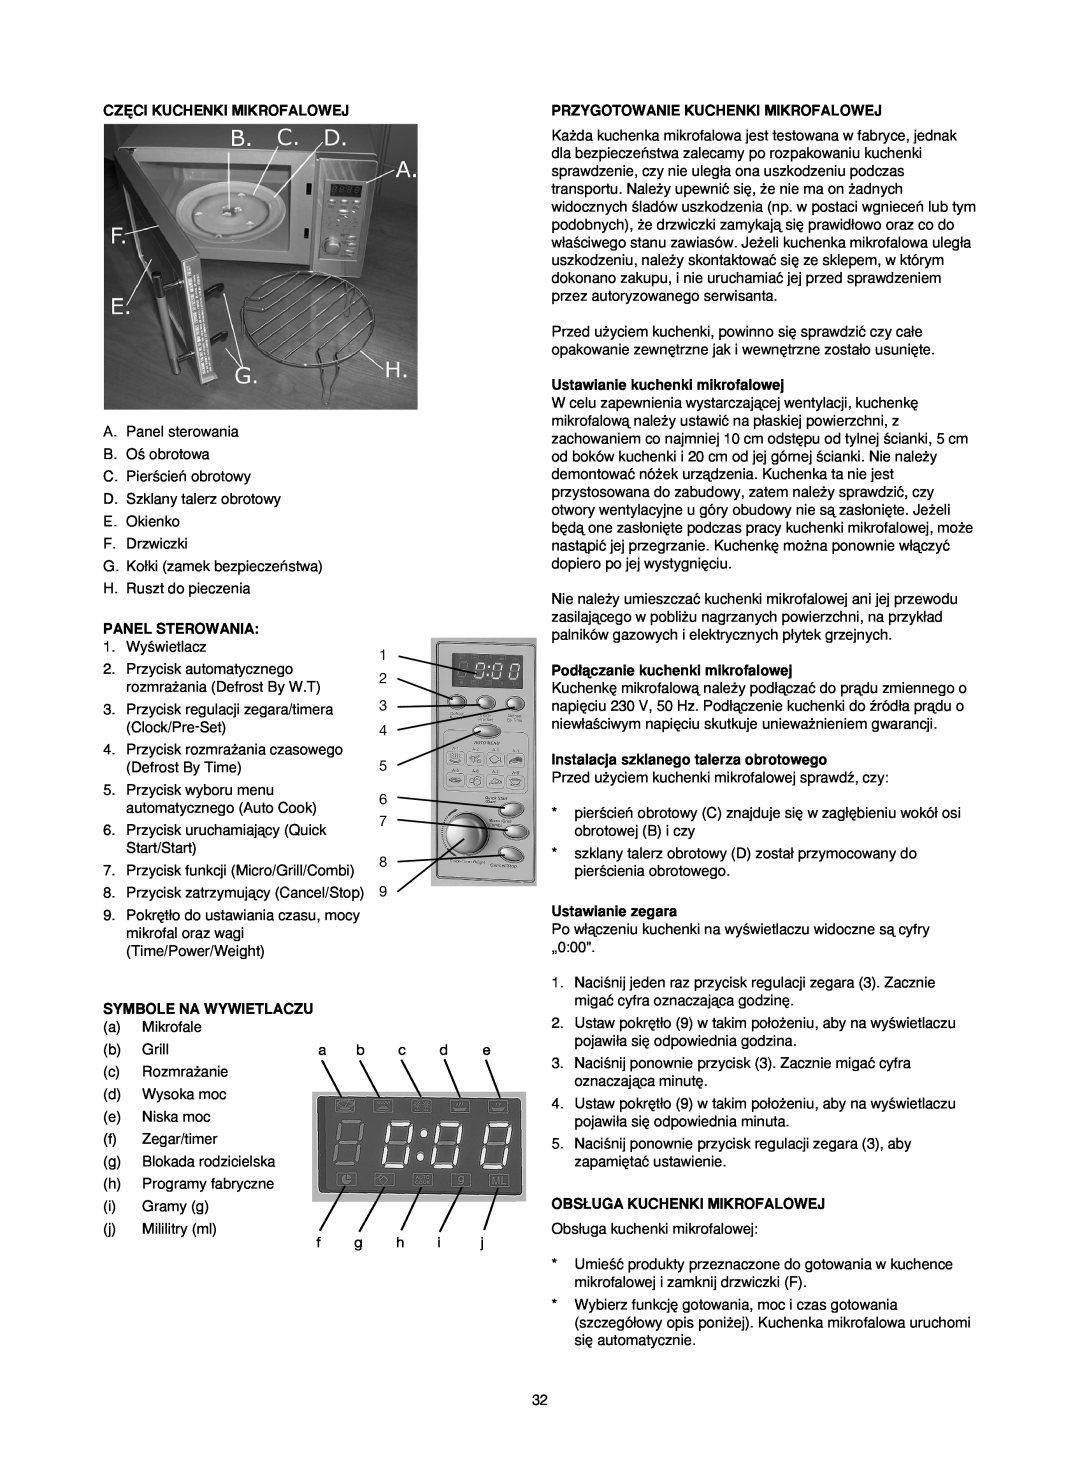 Melissa 753-093 Cz¢Ci Kuchenki Mikrofalowej, Przygotowanie Kuchenki Mikrofalowej, Panel Sterowania, Symbole Na Wywietlaczu 